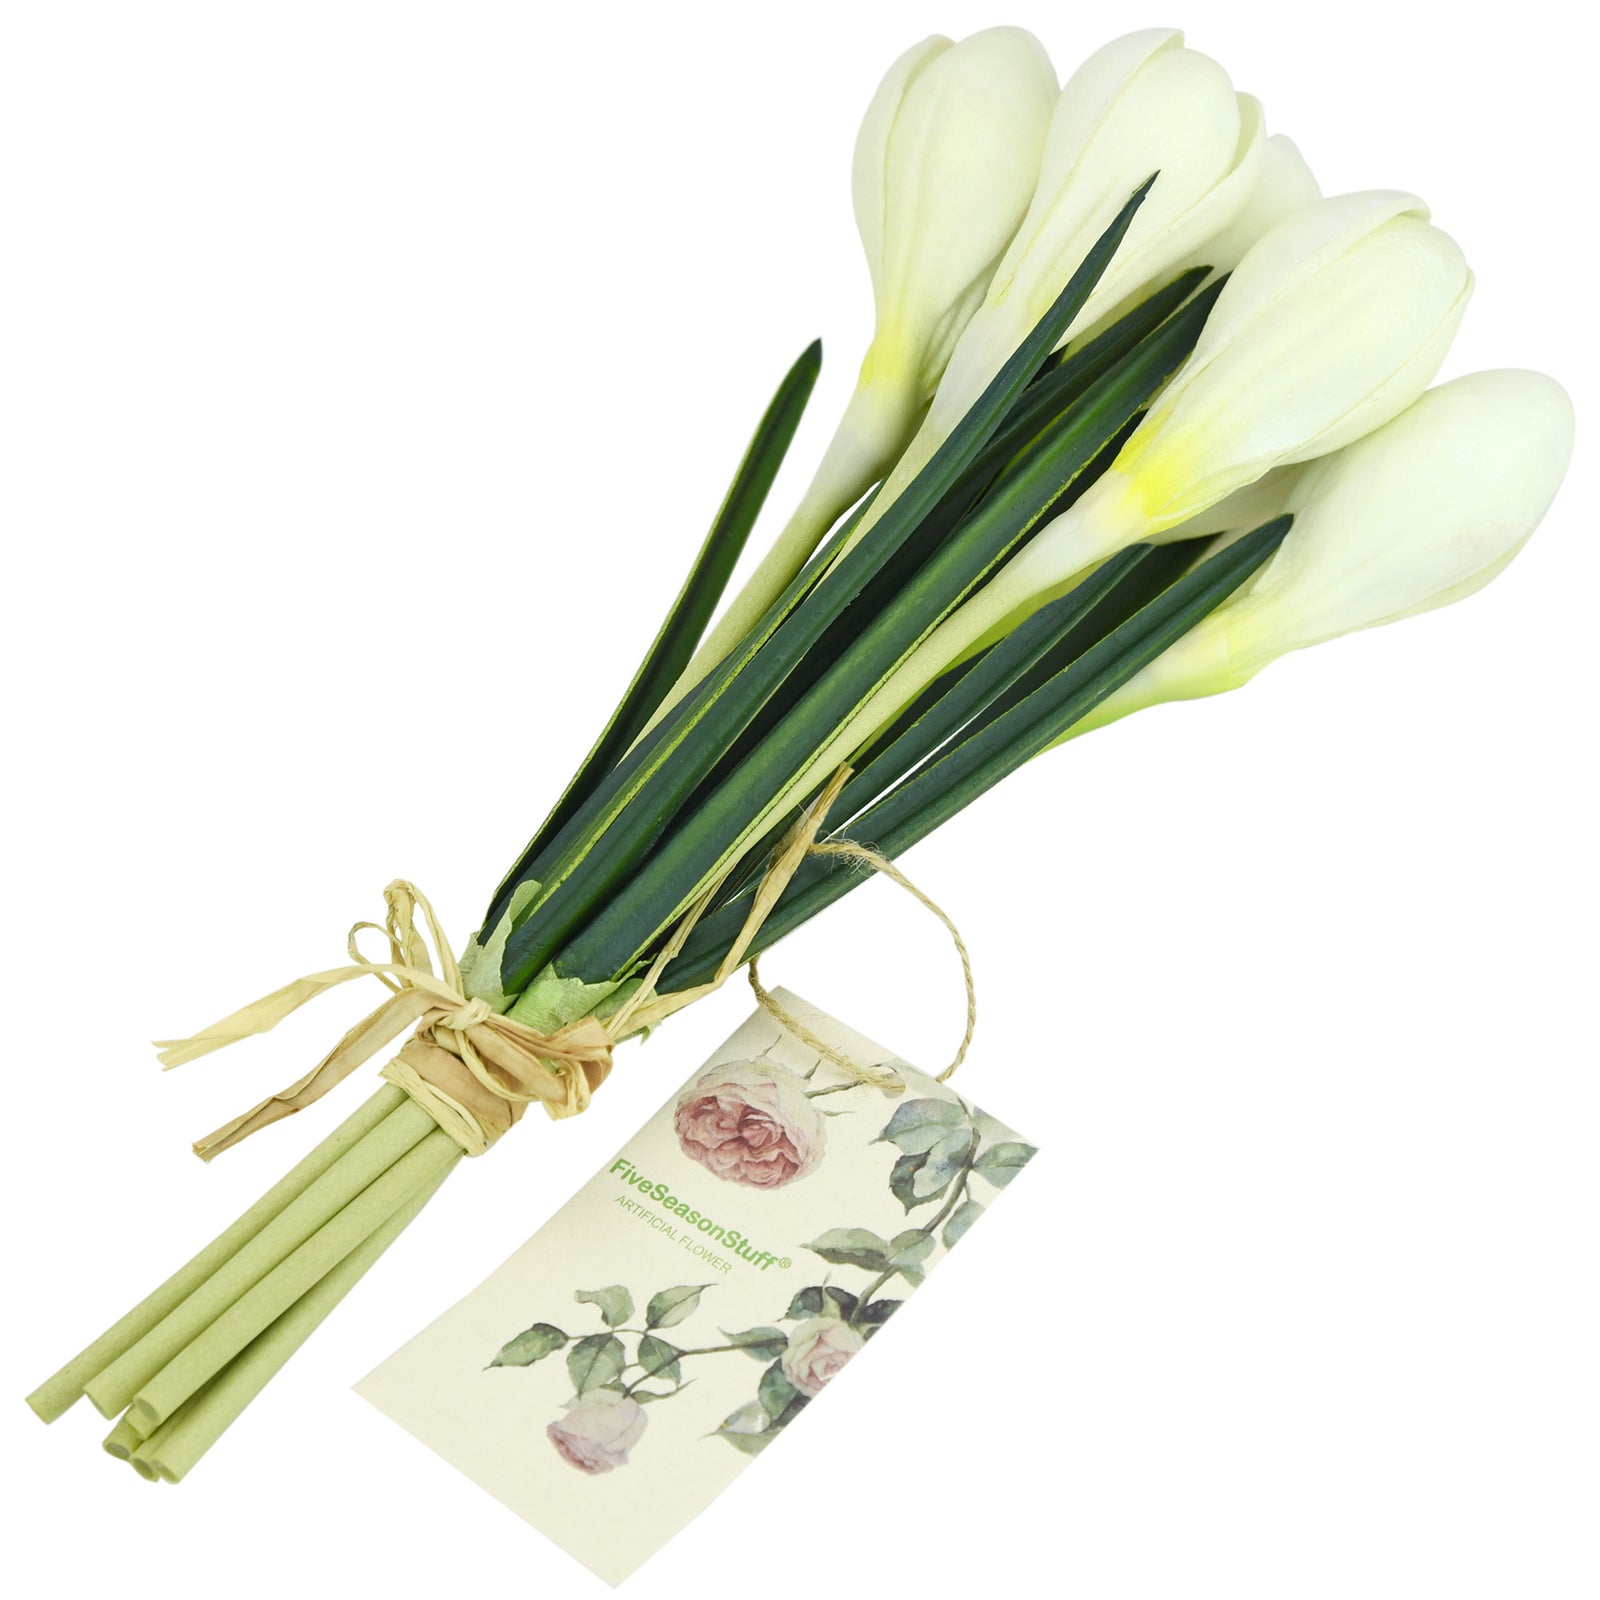 7 Stems (White) Realistic Artificial Saffron Crocus Flowers